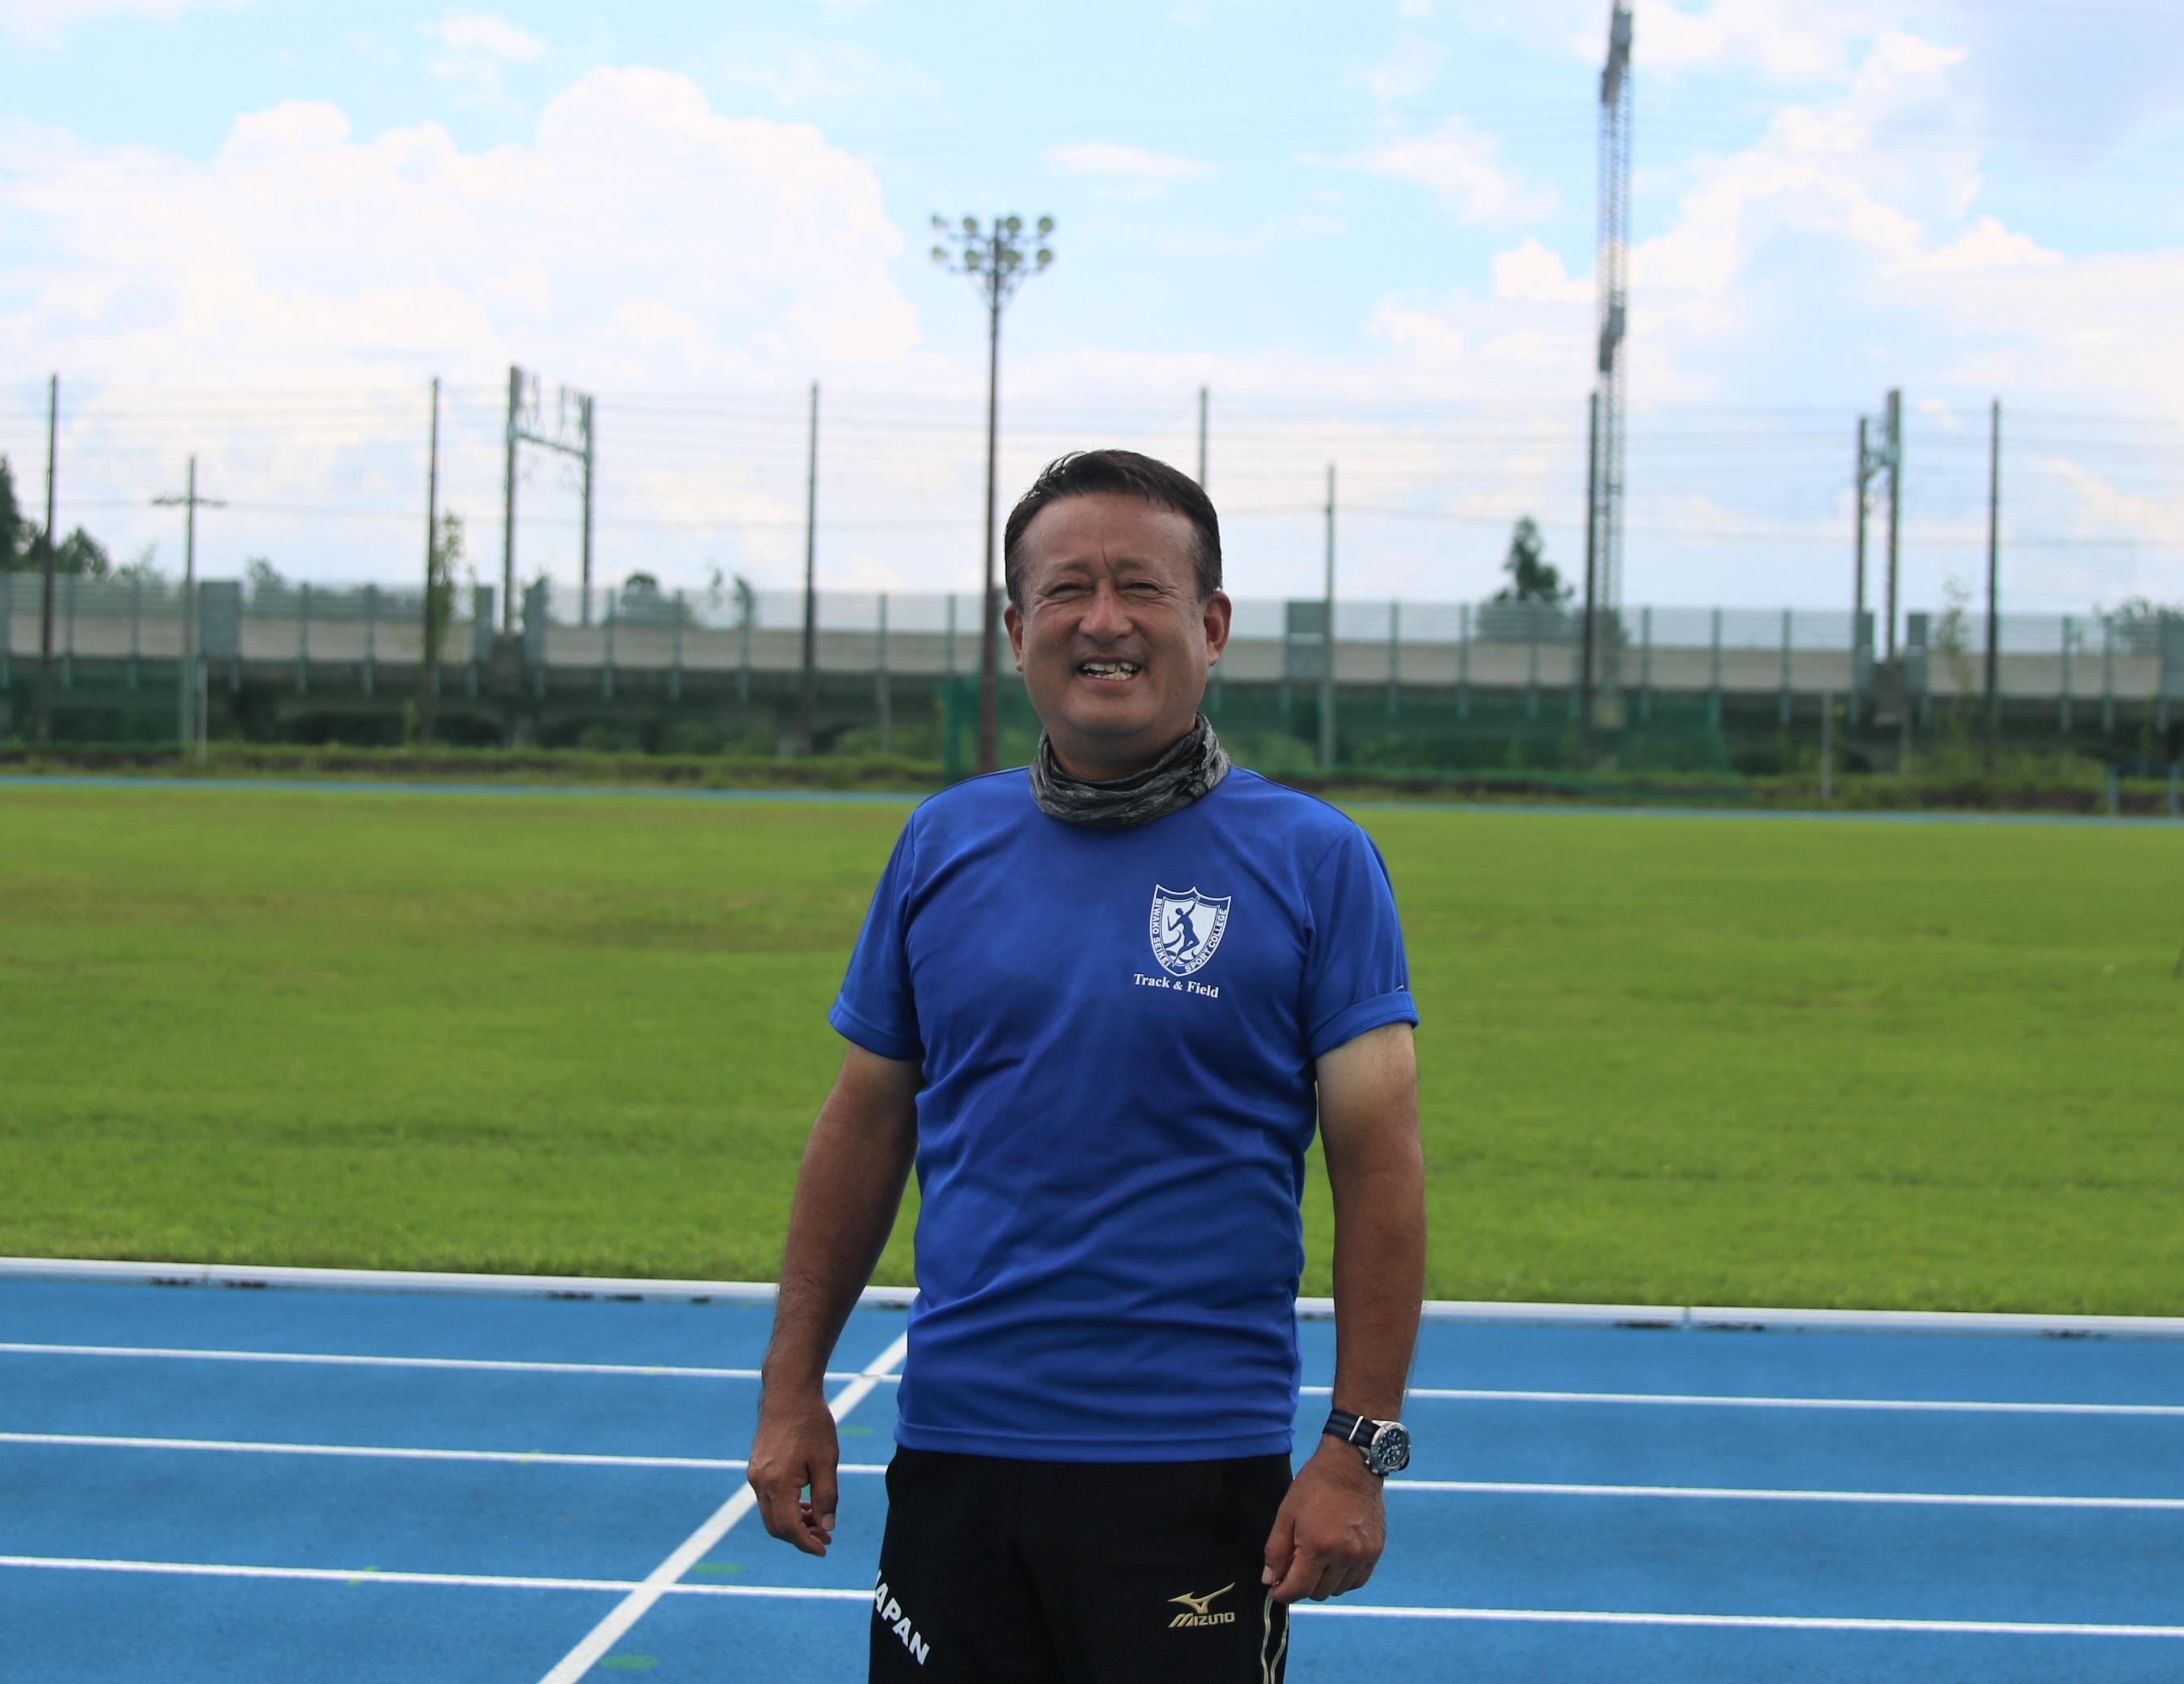 びわこ成蹊スポーツ大学陸上フィールドでパラリンピック日本代表の強化合宿を実施 -- 陸上競技部の石井田茂夫監督が選手を指導